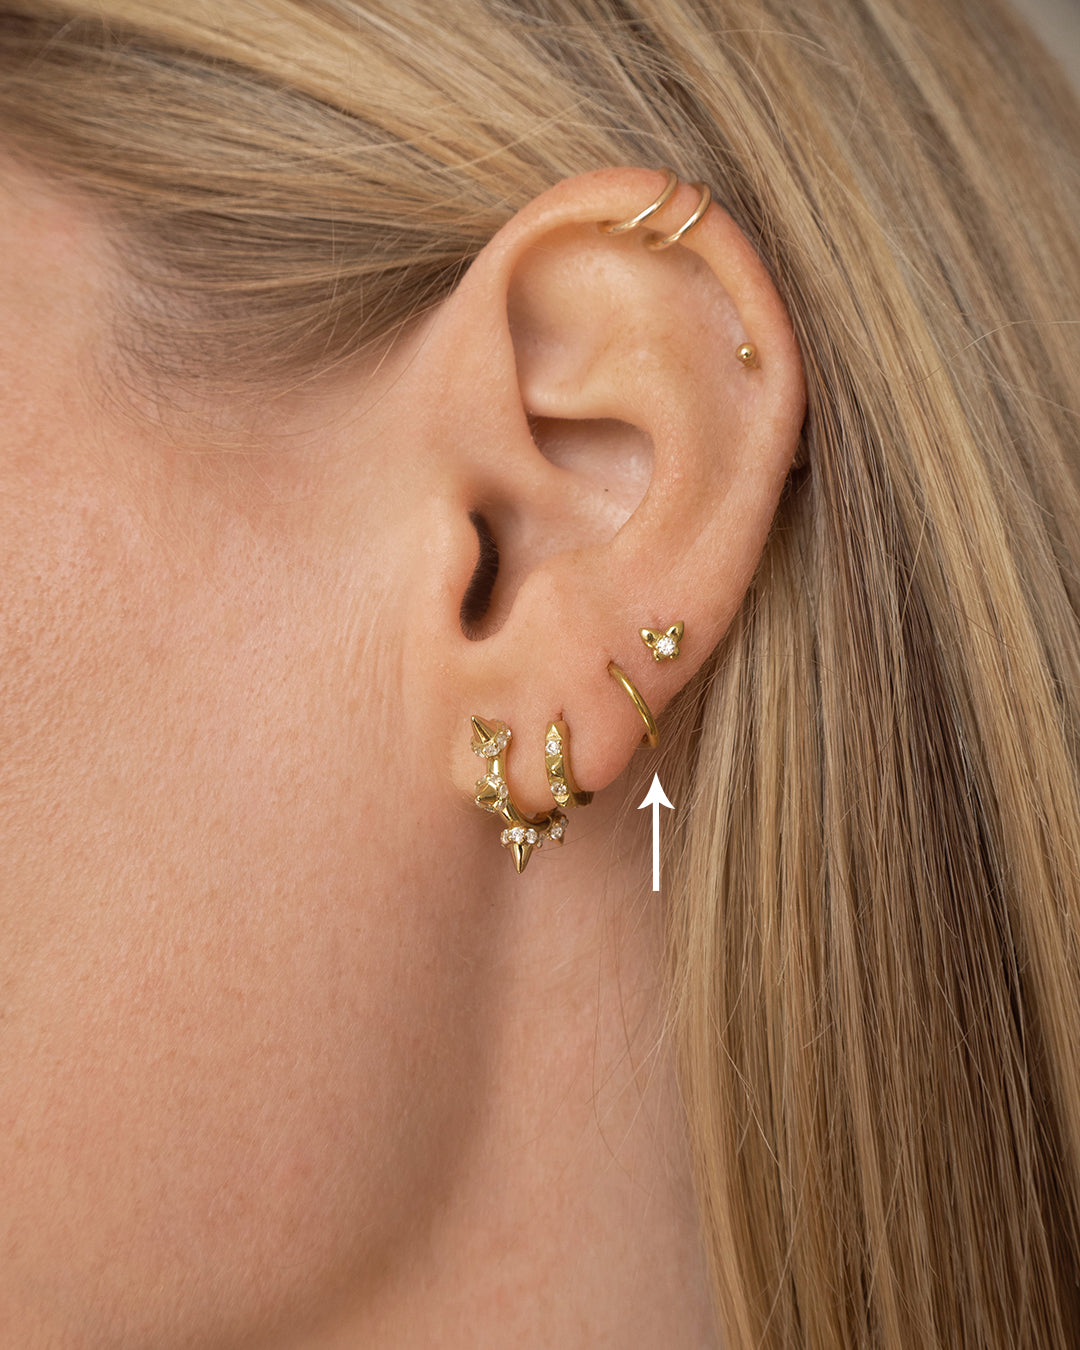 Luv Aj Endless Tiny Huggie Hoop Earrings in Polished 14k Gold Plated